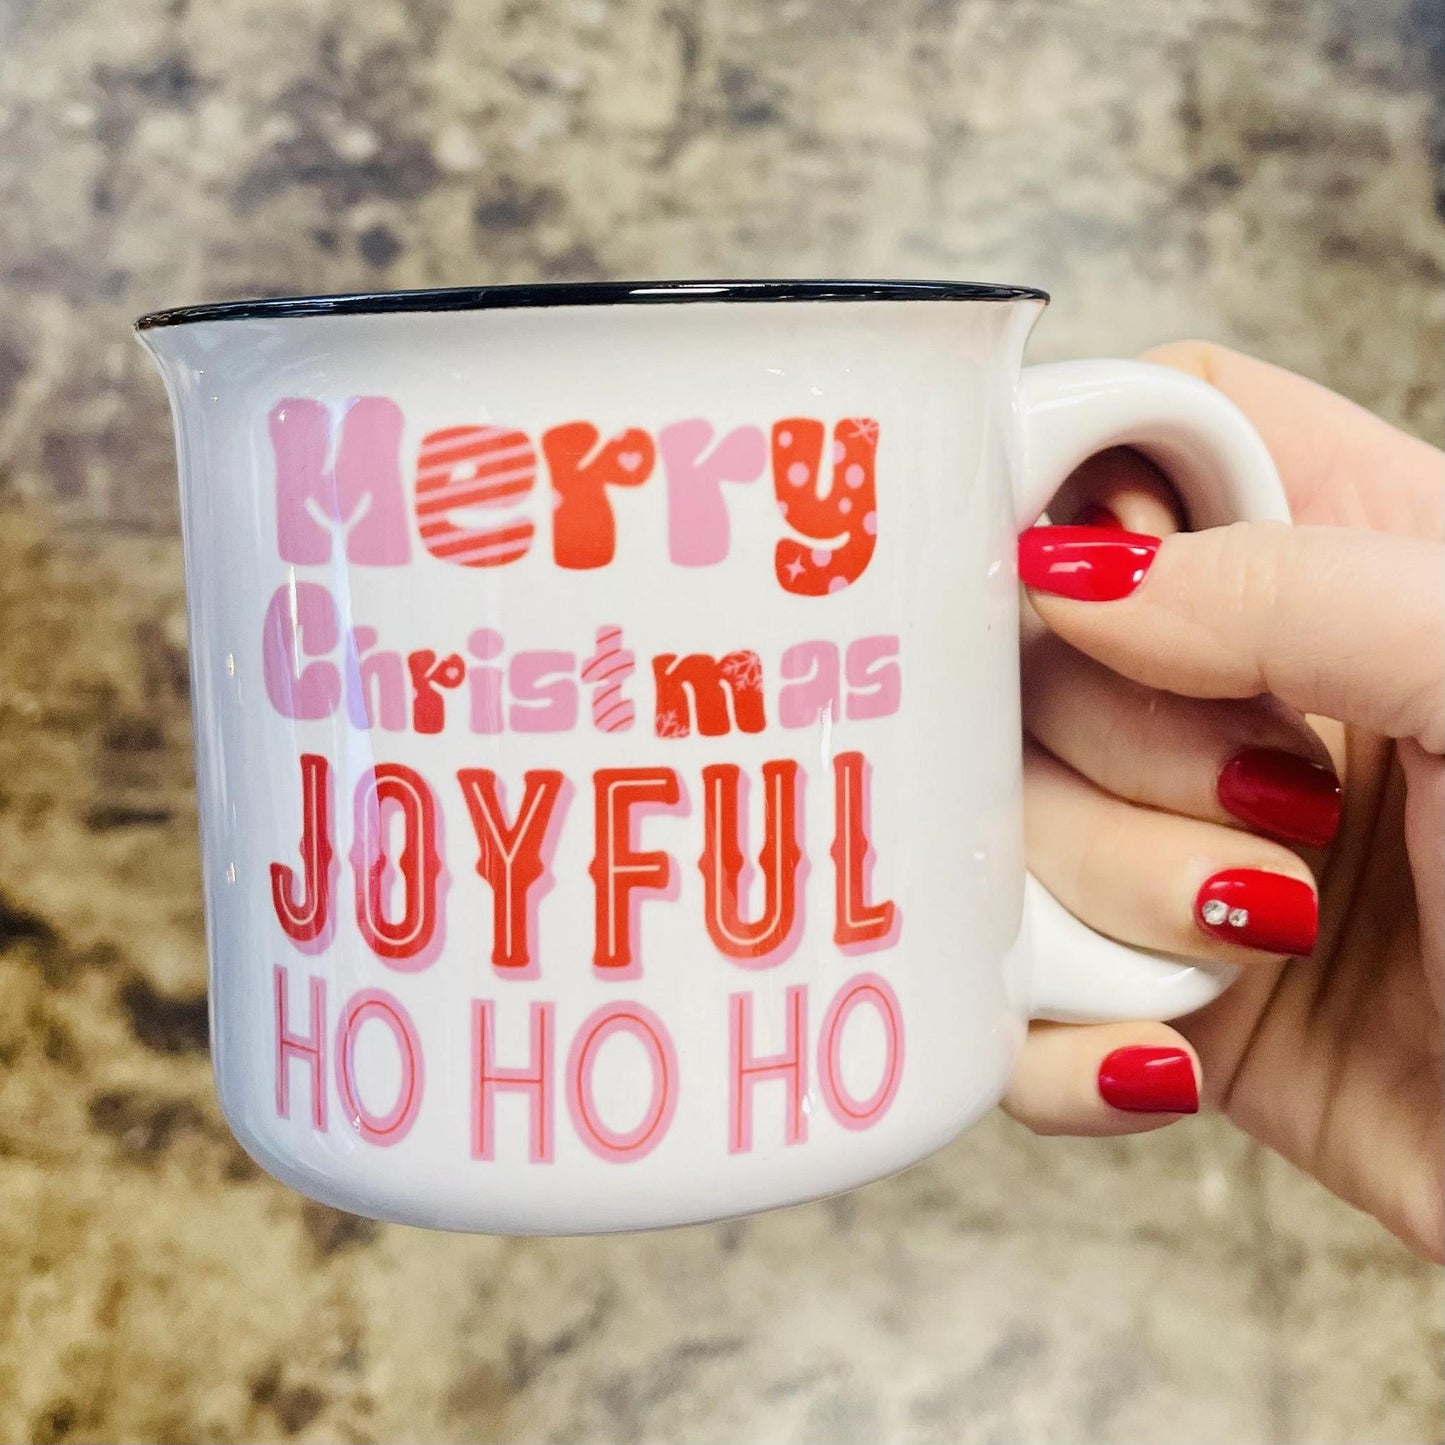 Merry Christmas Joyful Coffee Mug